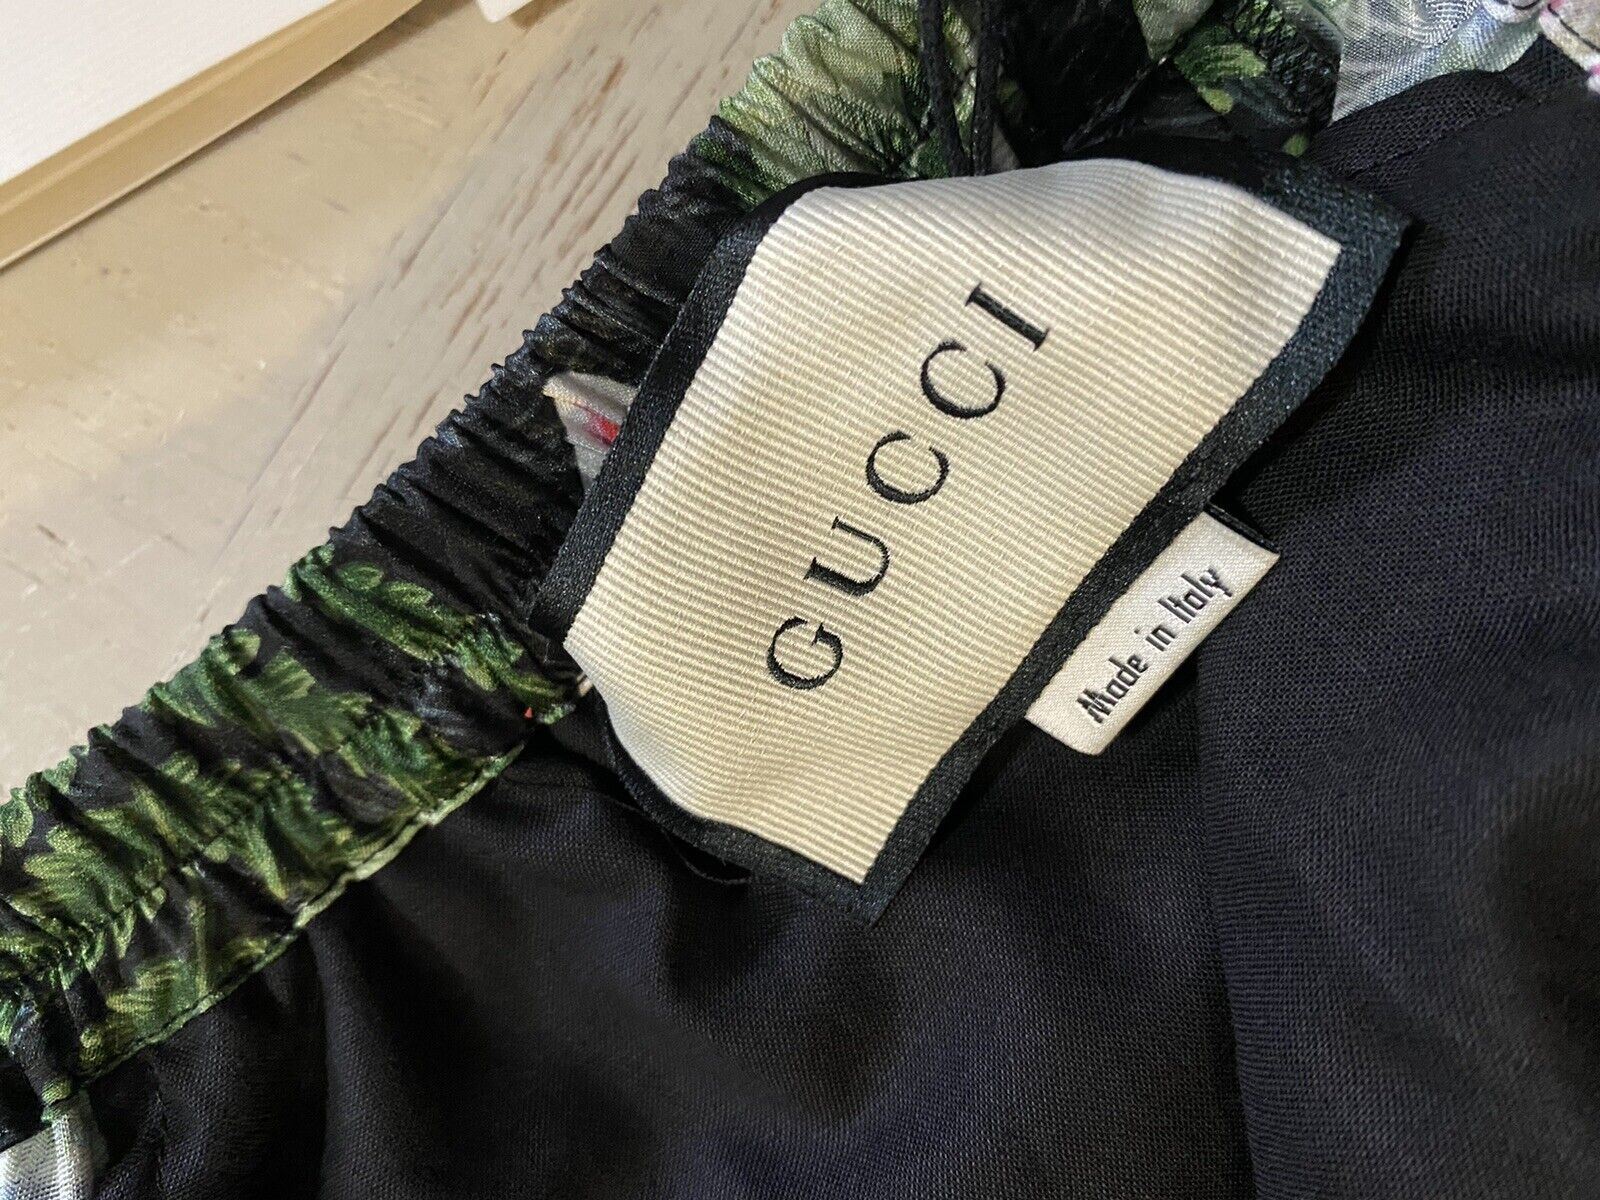 СЗТ $980 Gucci Мужские шорты Gucci Soul Monogram черного/зеленого/разного цвета 28 US/44